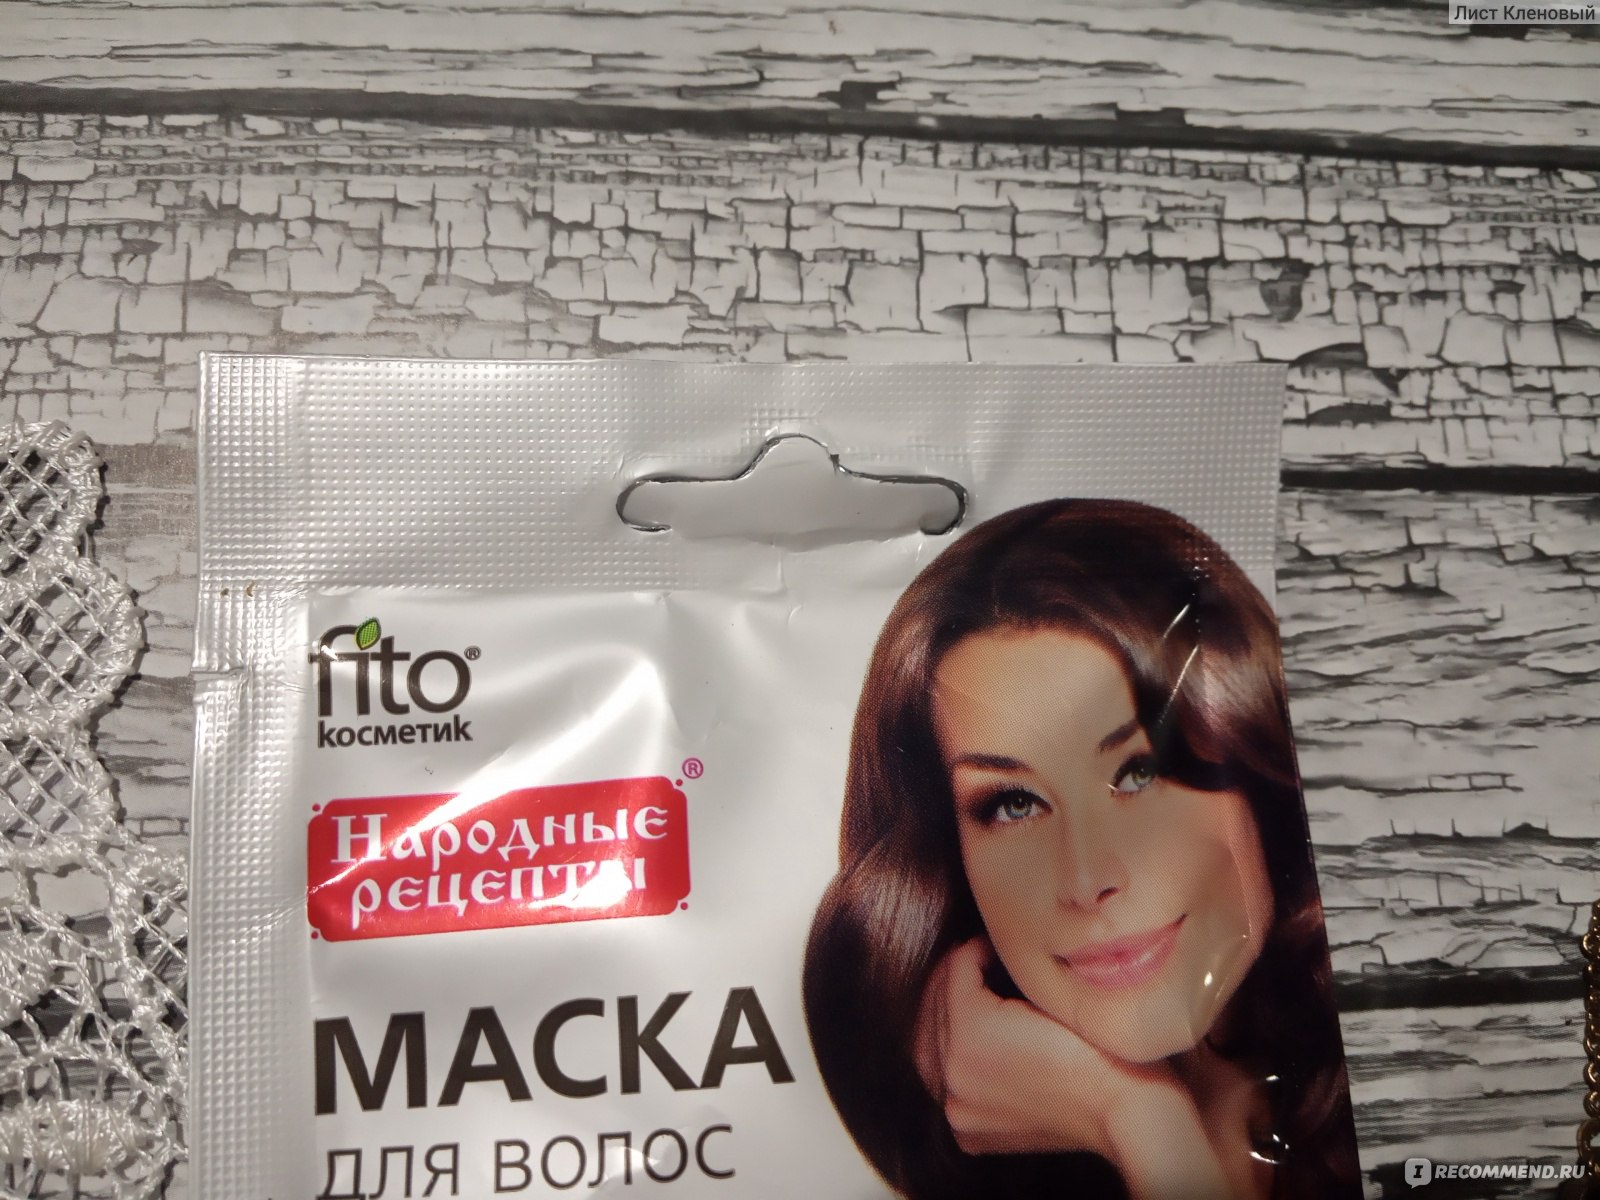 Натуральная маска для волос репейная с какао и яичным желтком против выпадения